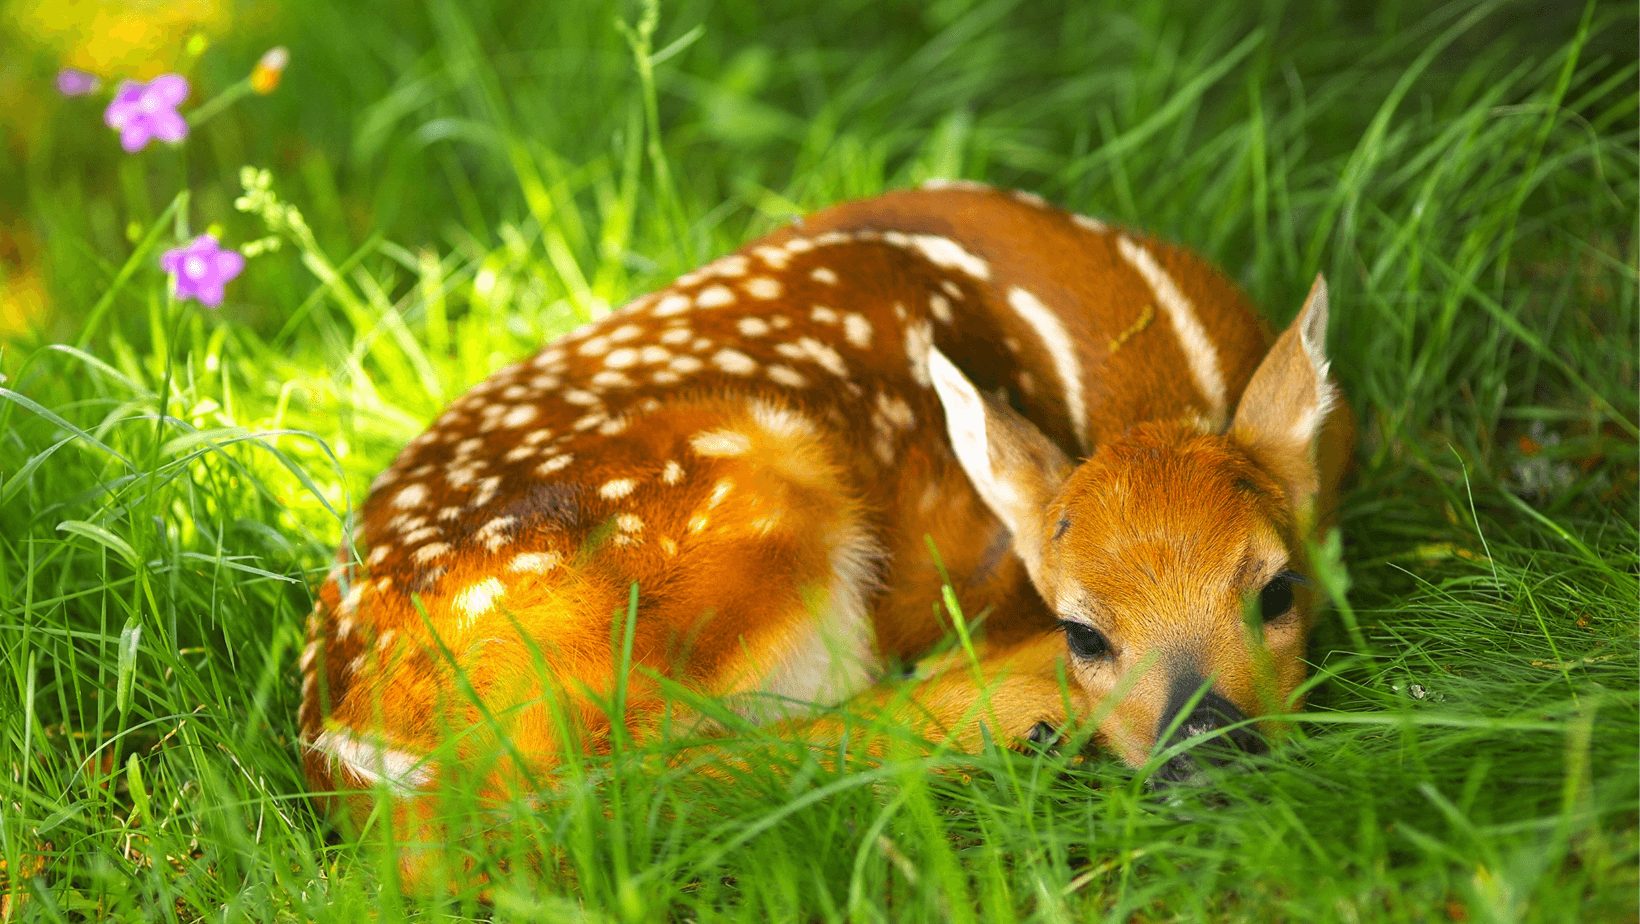 Origin of Bambi